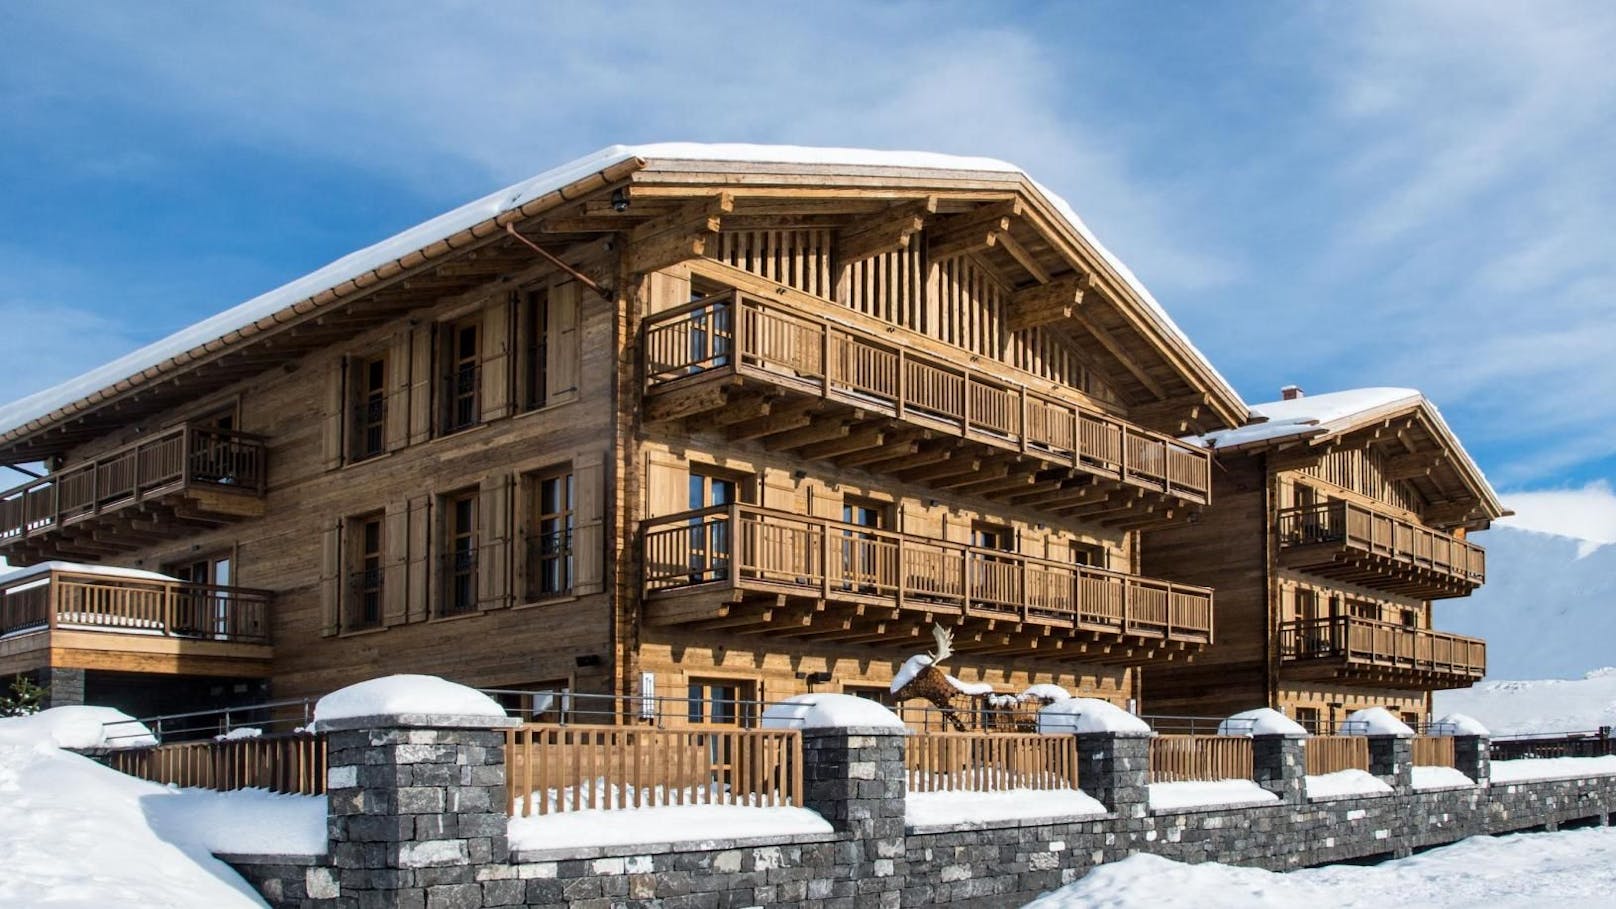 Das Luxus-Feriendomizil am Arlberg errichtete Benko für 38 Mio. Euro.